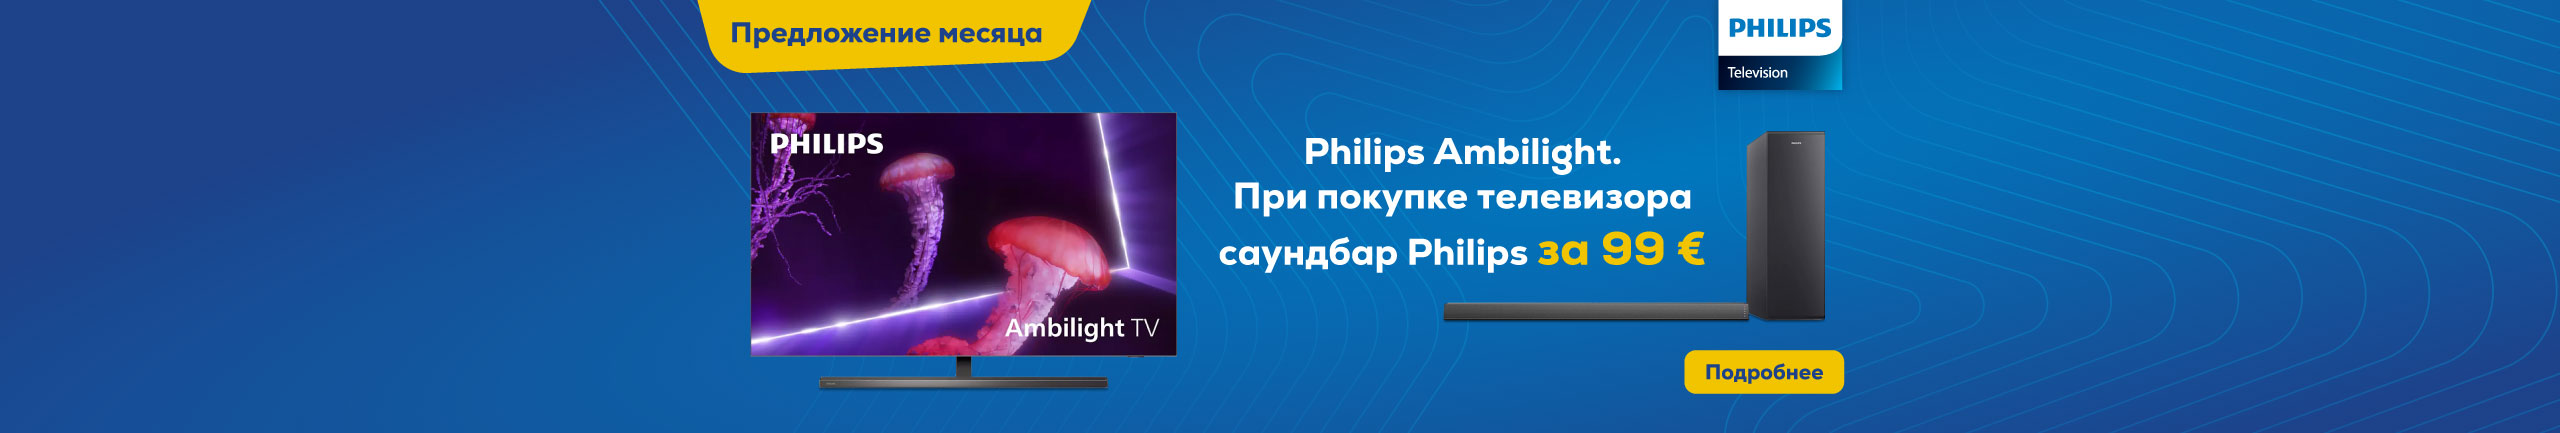 Philips Ambilight. При покупке телевизора саундбар Philips за 99€